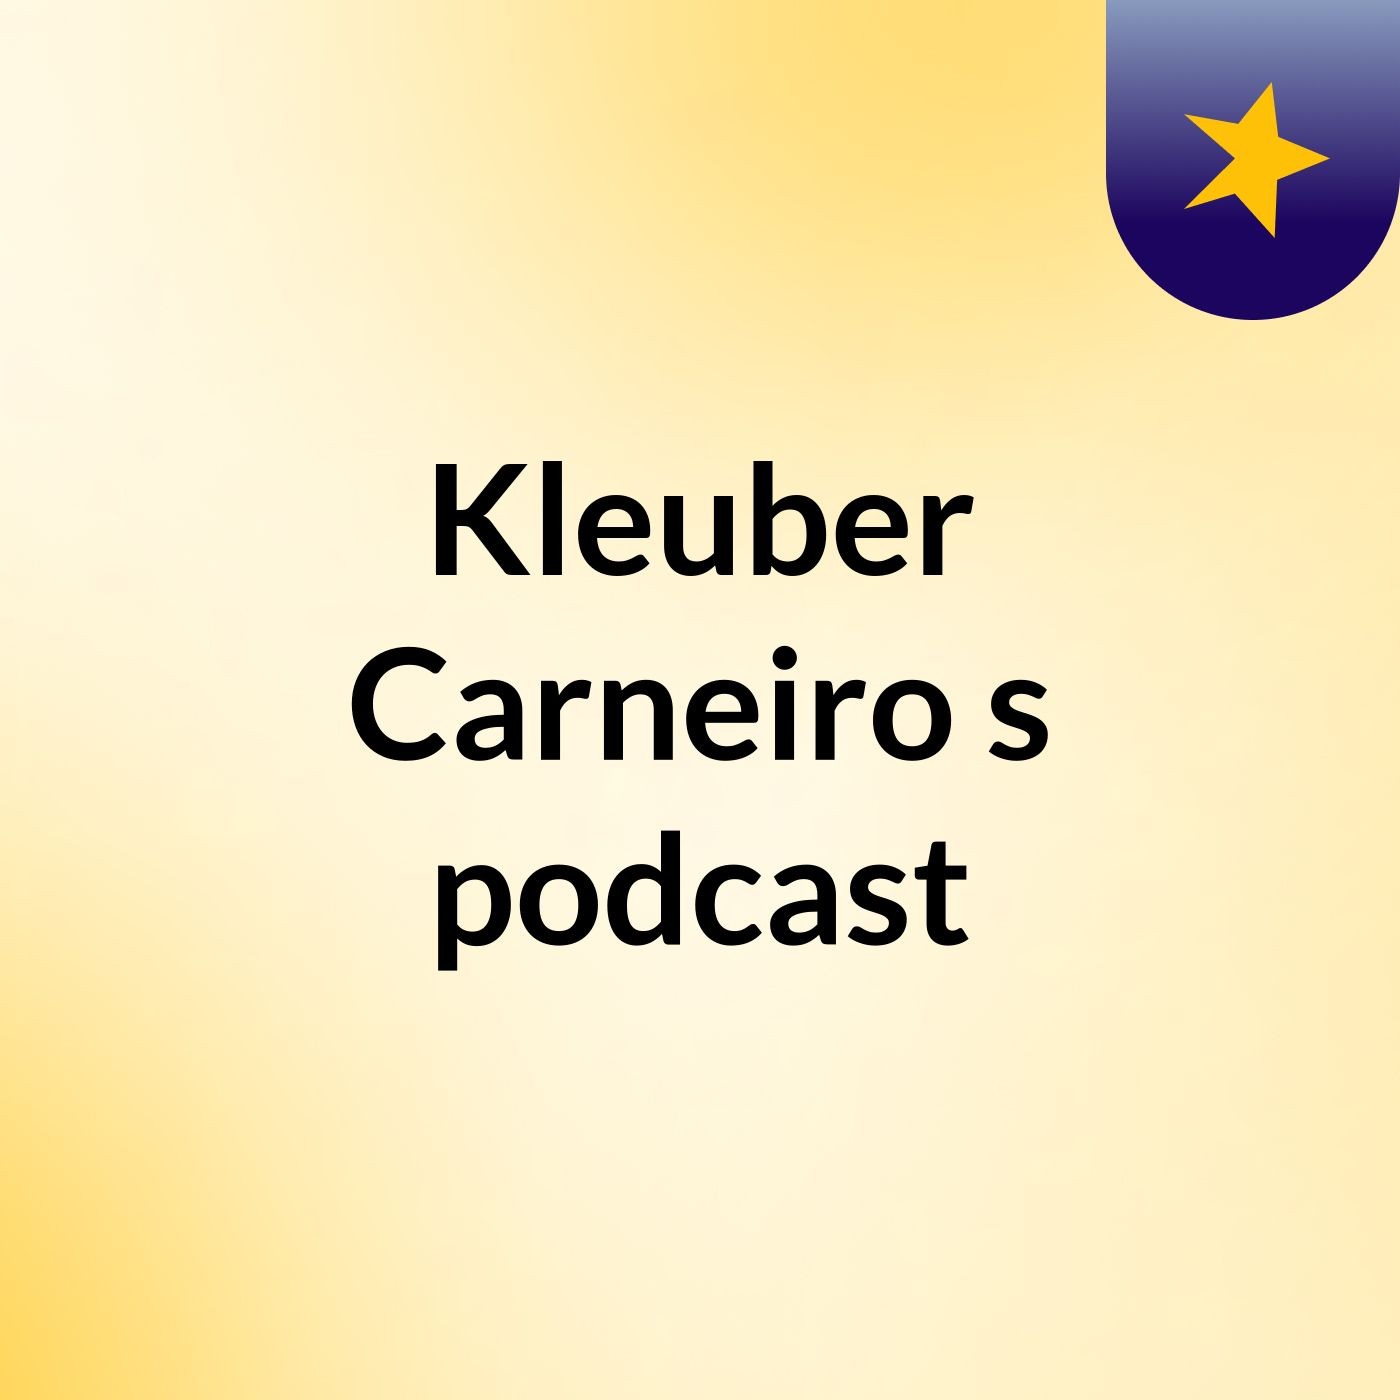 Kleuber Carneiro's podcast